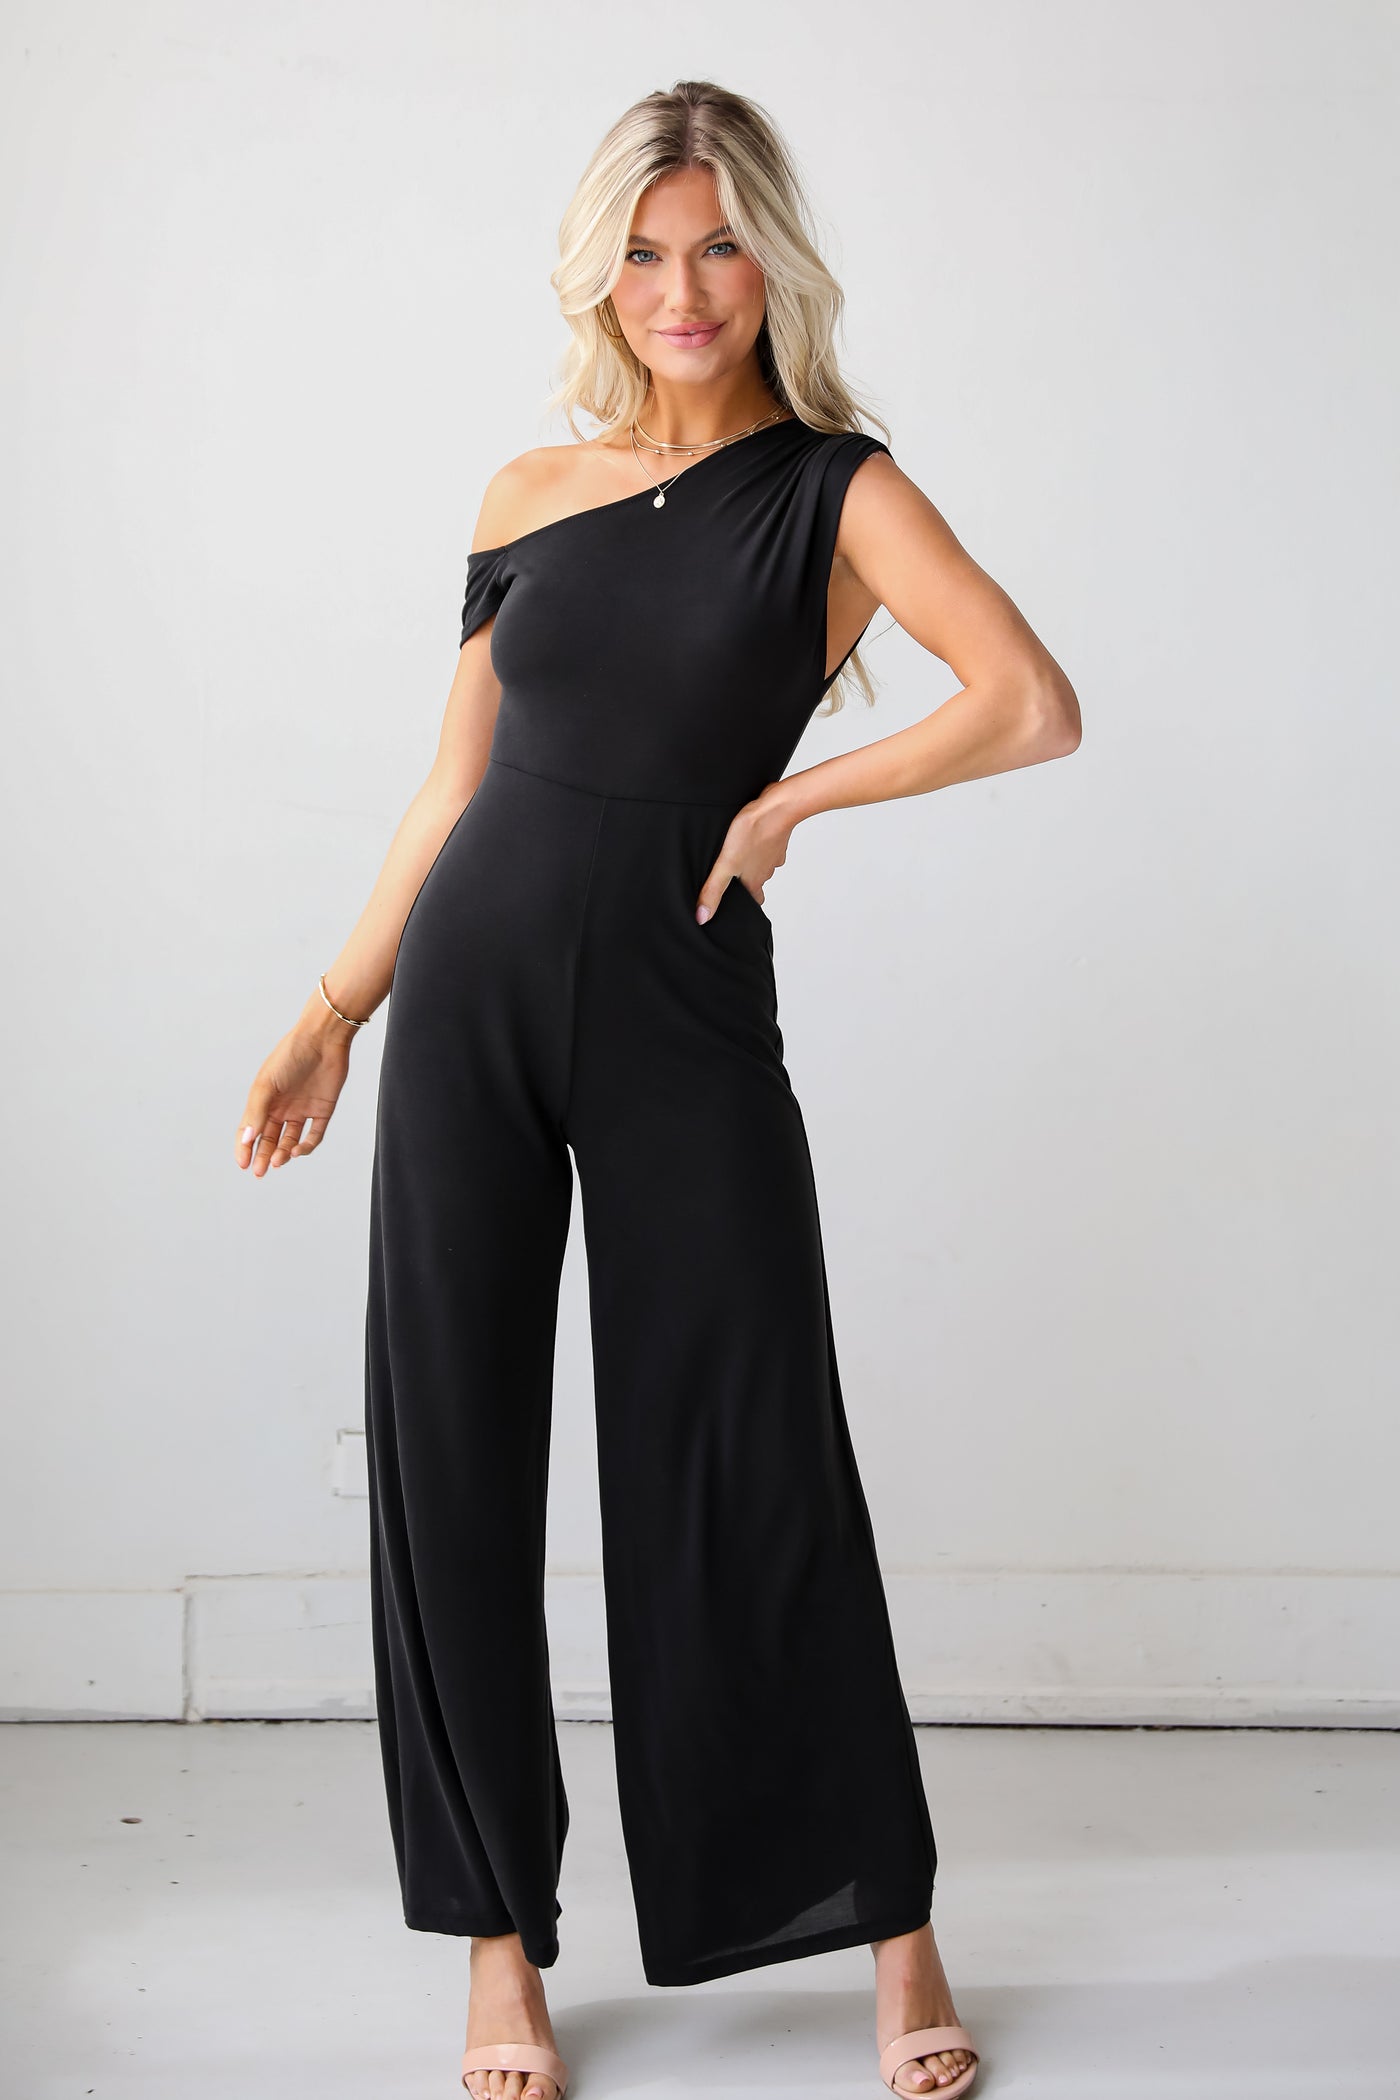 black cutout jumpsuit for women Authentically Yours Black Jumpsuit